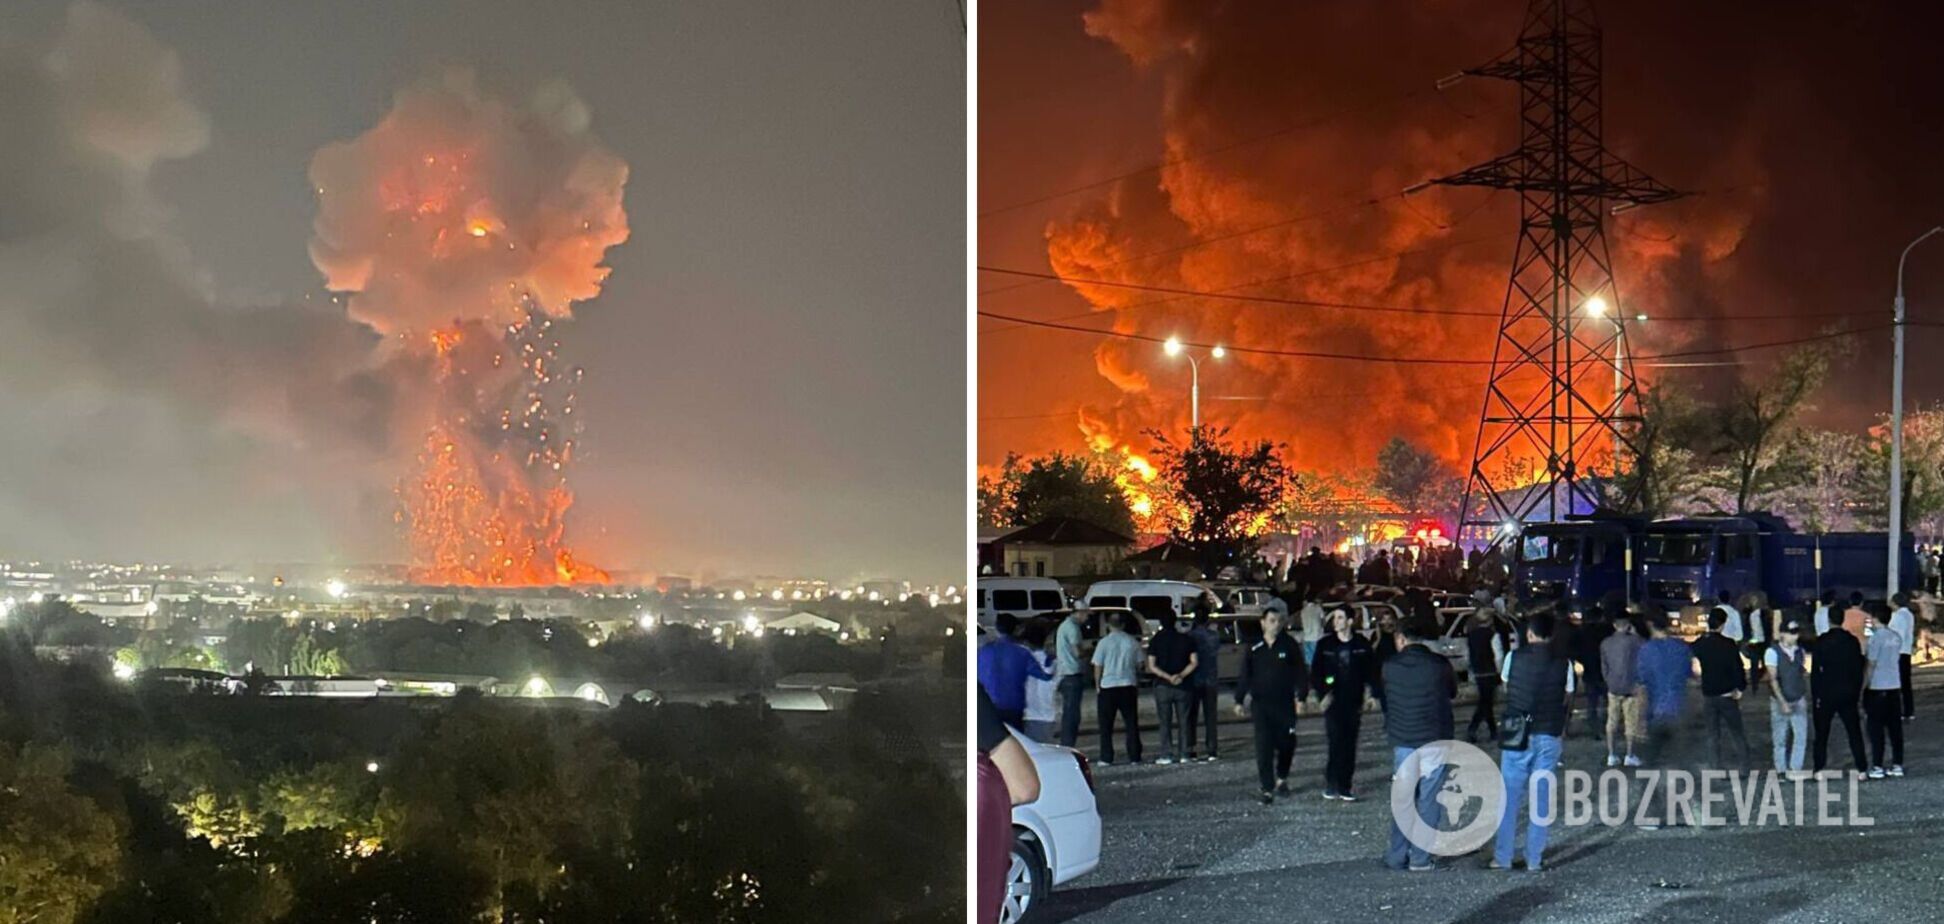 В Ташкенте прогремел мощный взрыв на таможенном складе: вспыхнул сильный пожар. Фото и видео